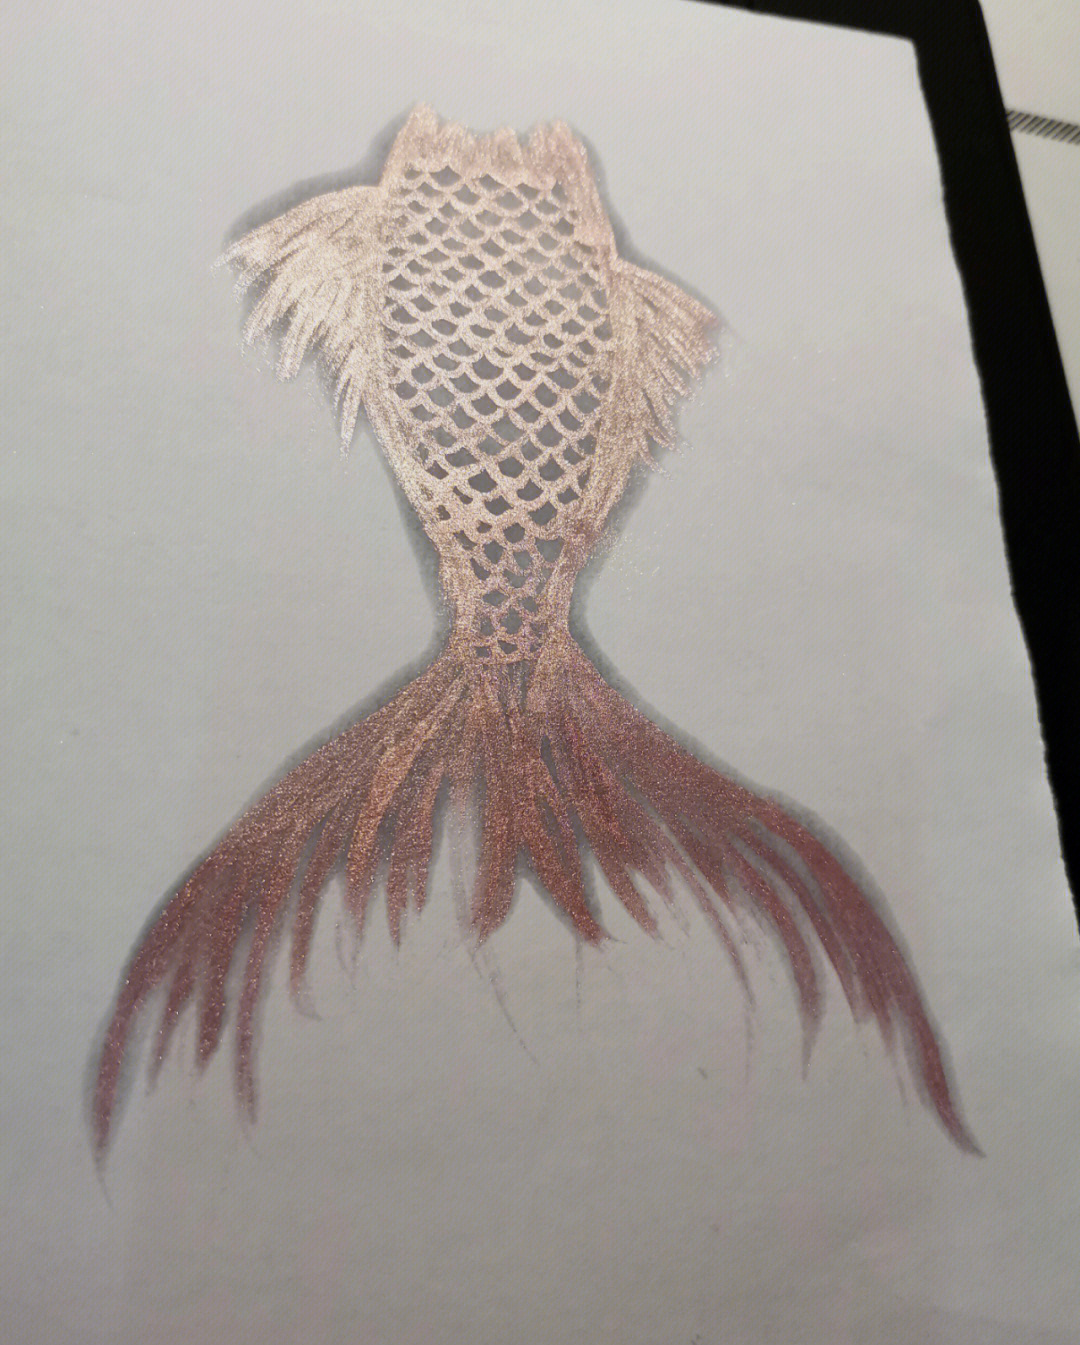 无聊的时候画个鱼大尾巴